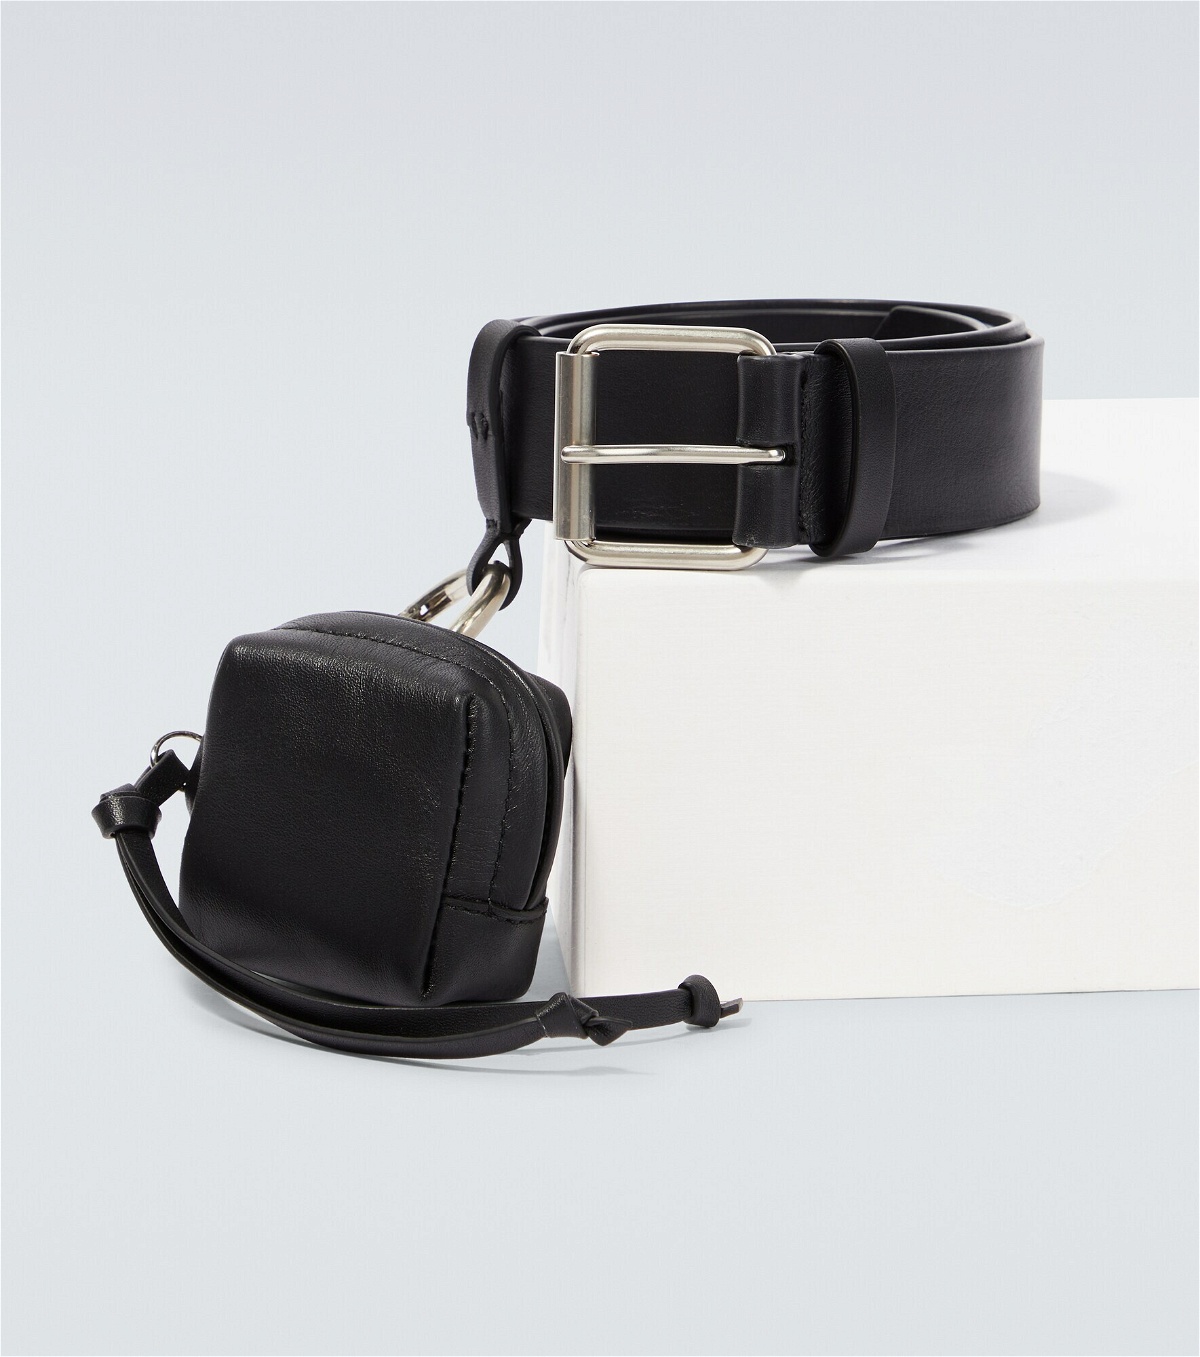 Dries Van Noten - Leather belt and bag Dries Van Noten